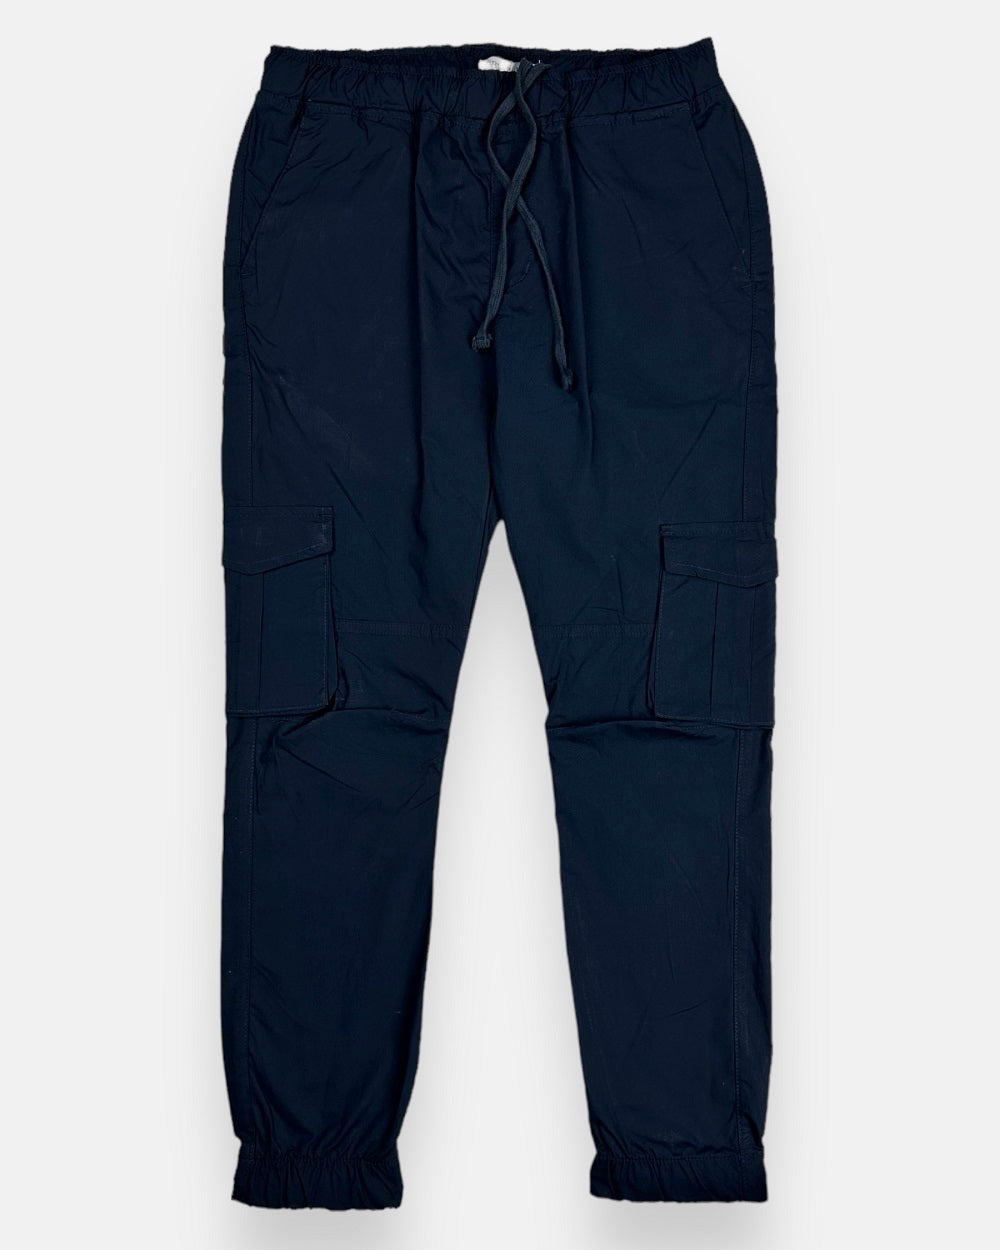 Cargo trouser – navy blue